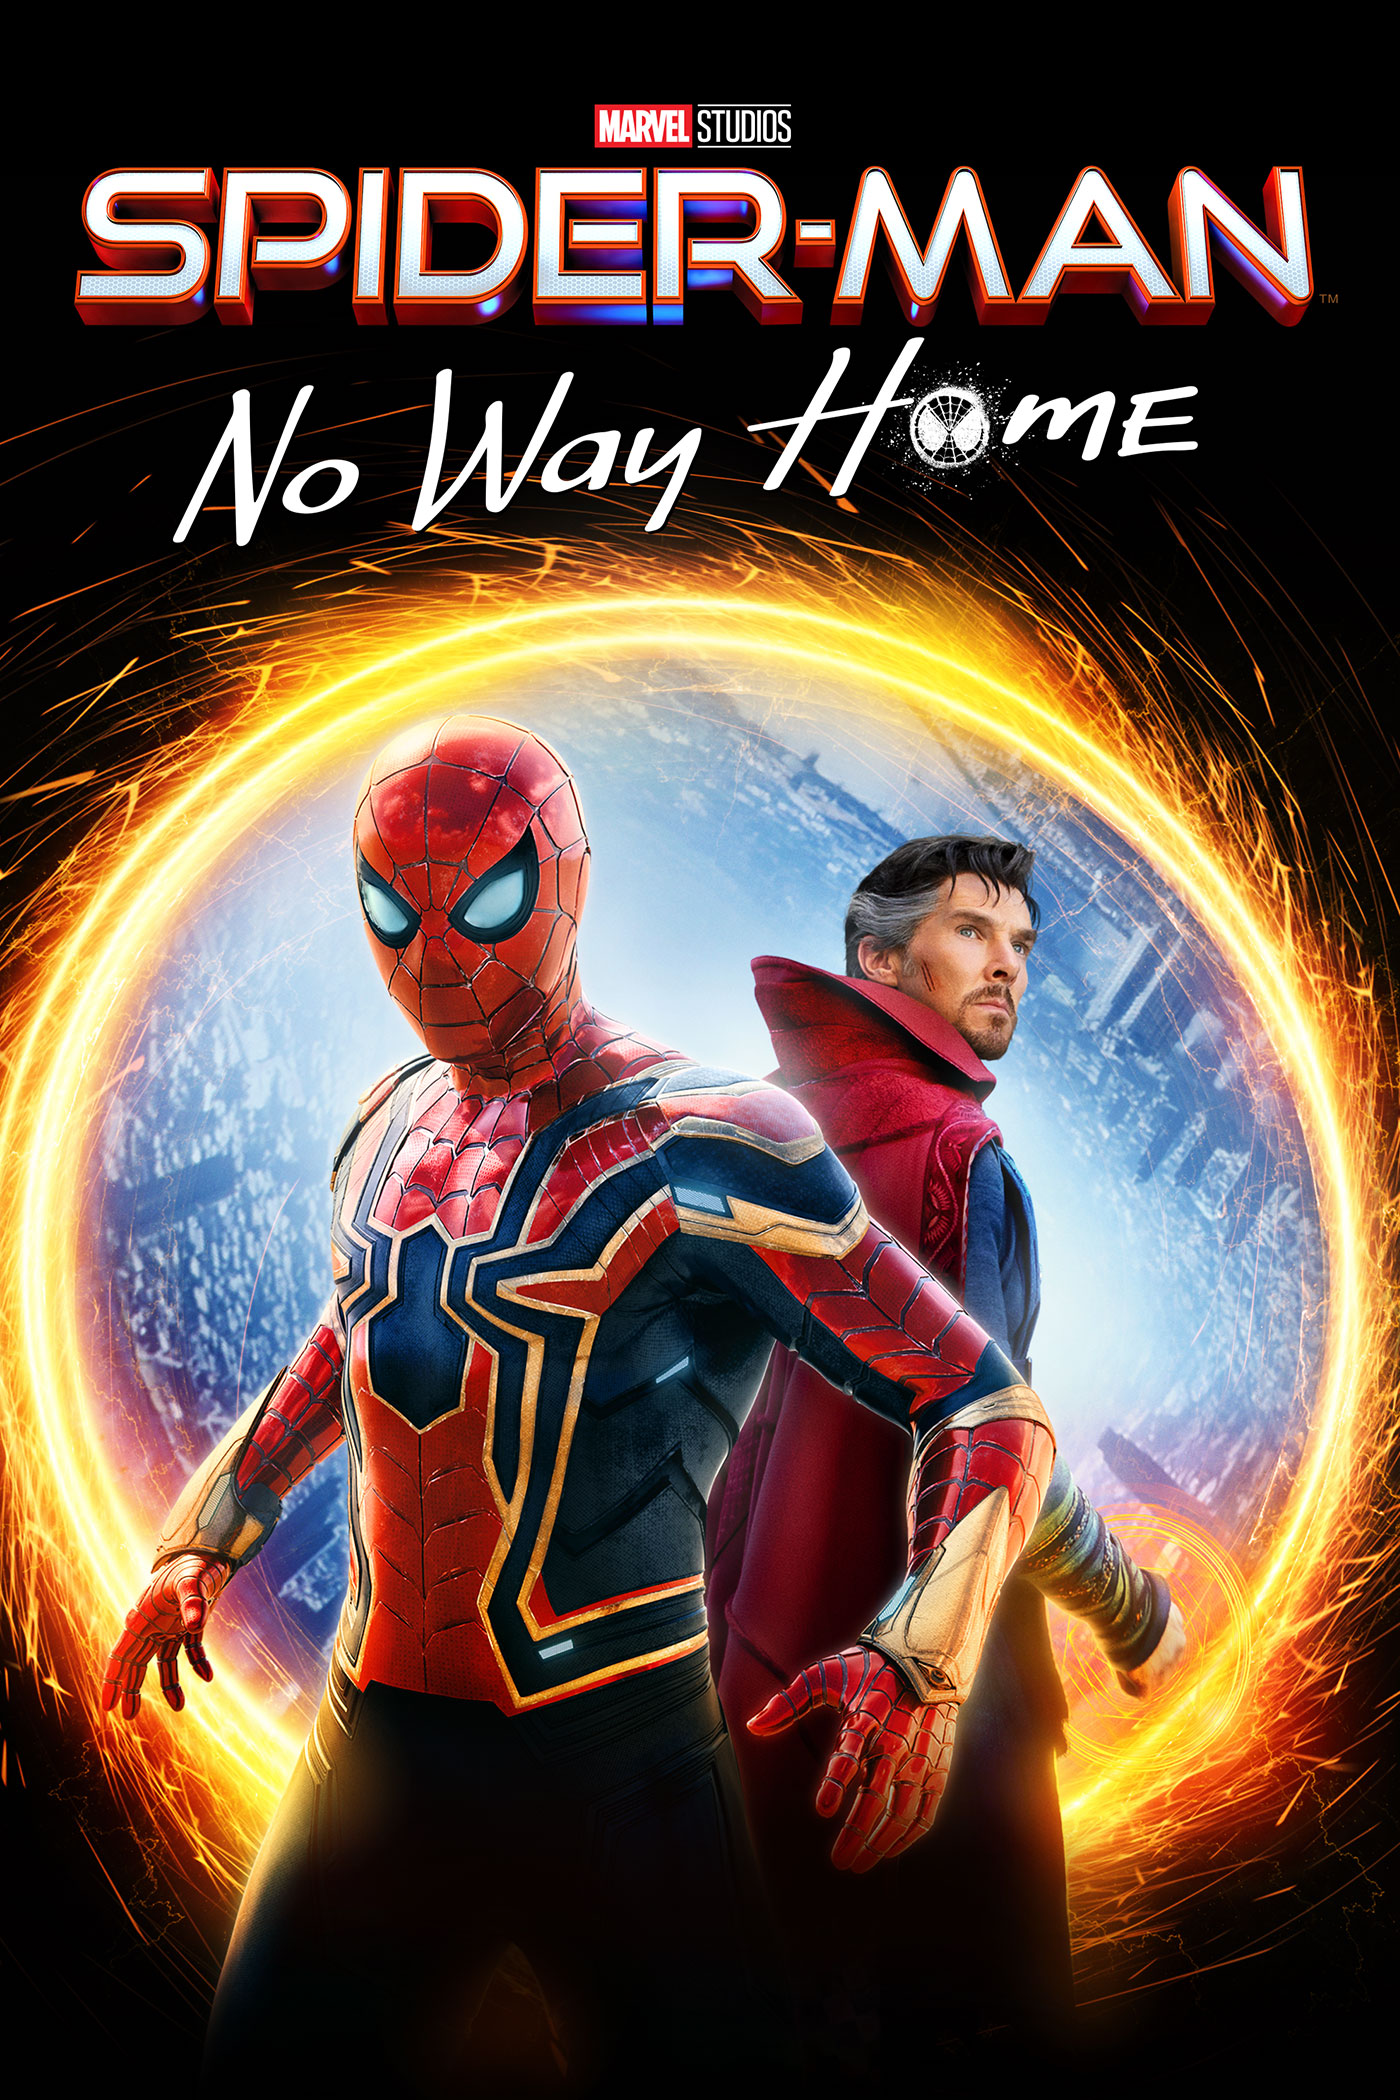 Spider-Man: No Way Home Keyart Image